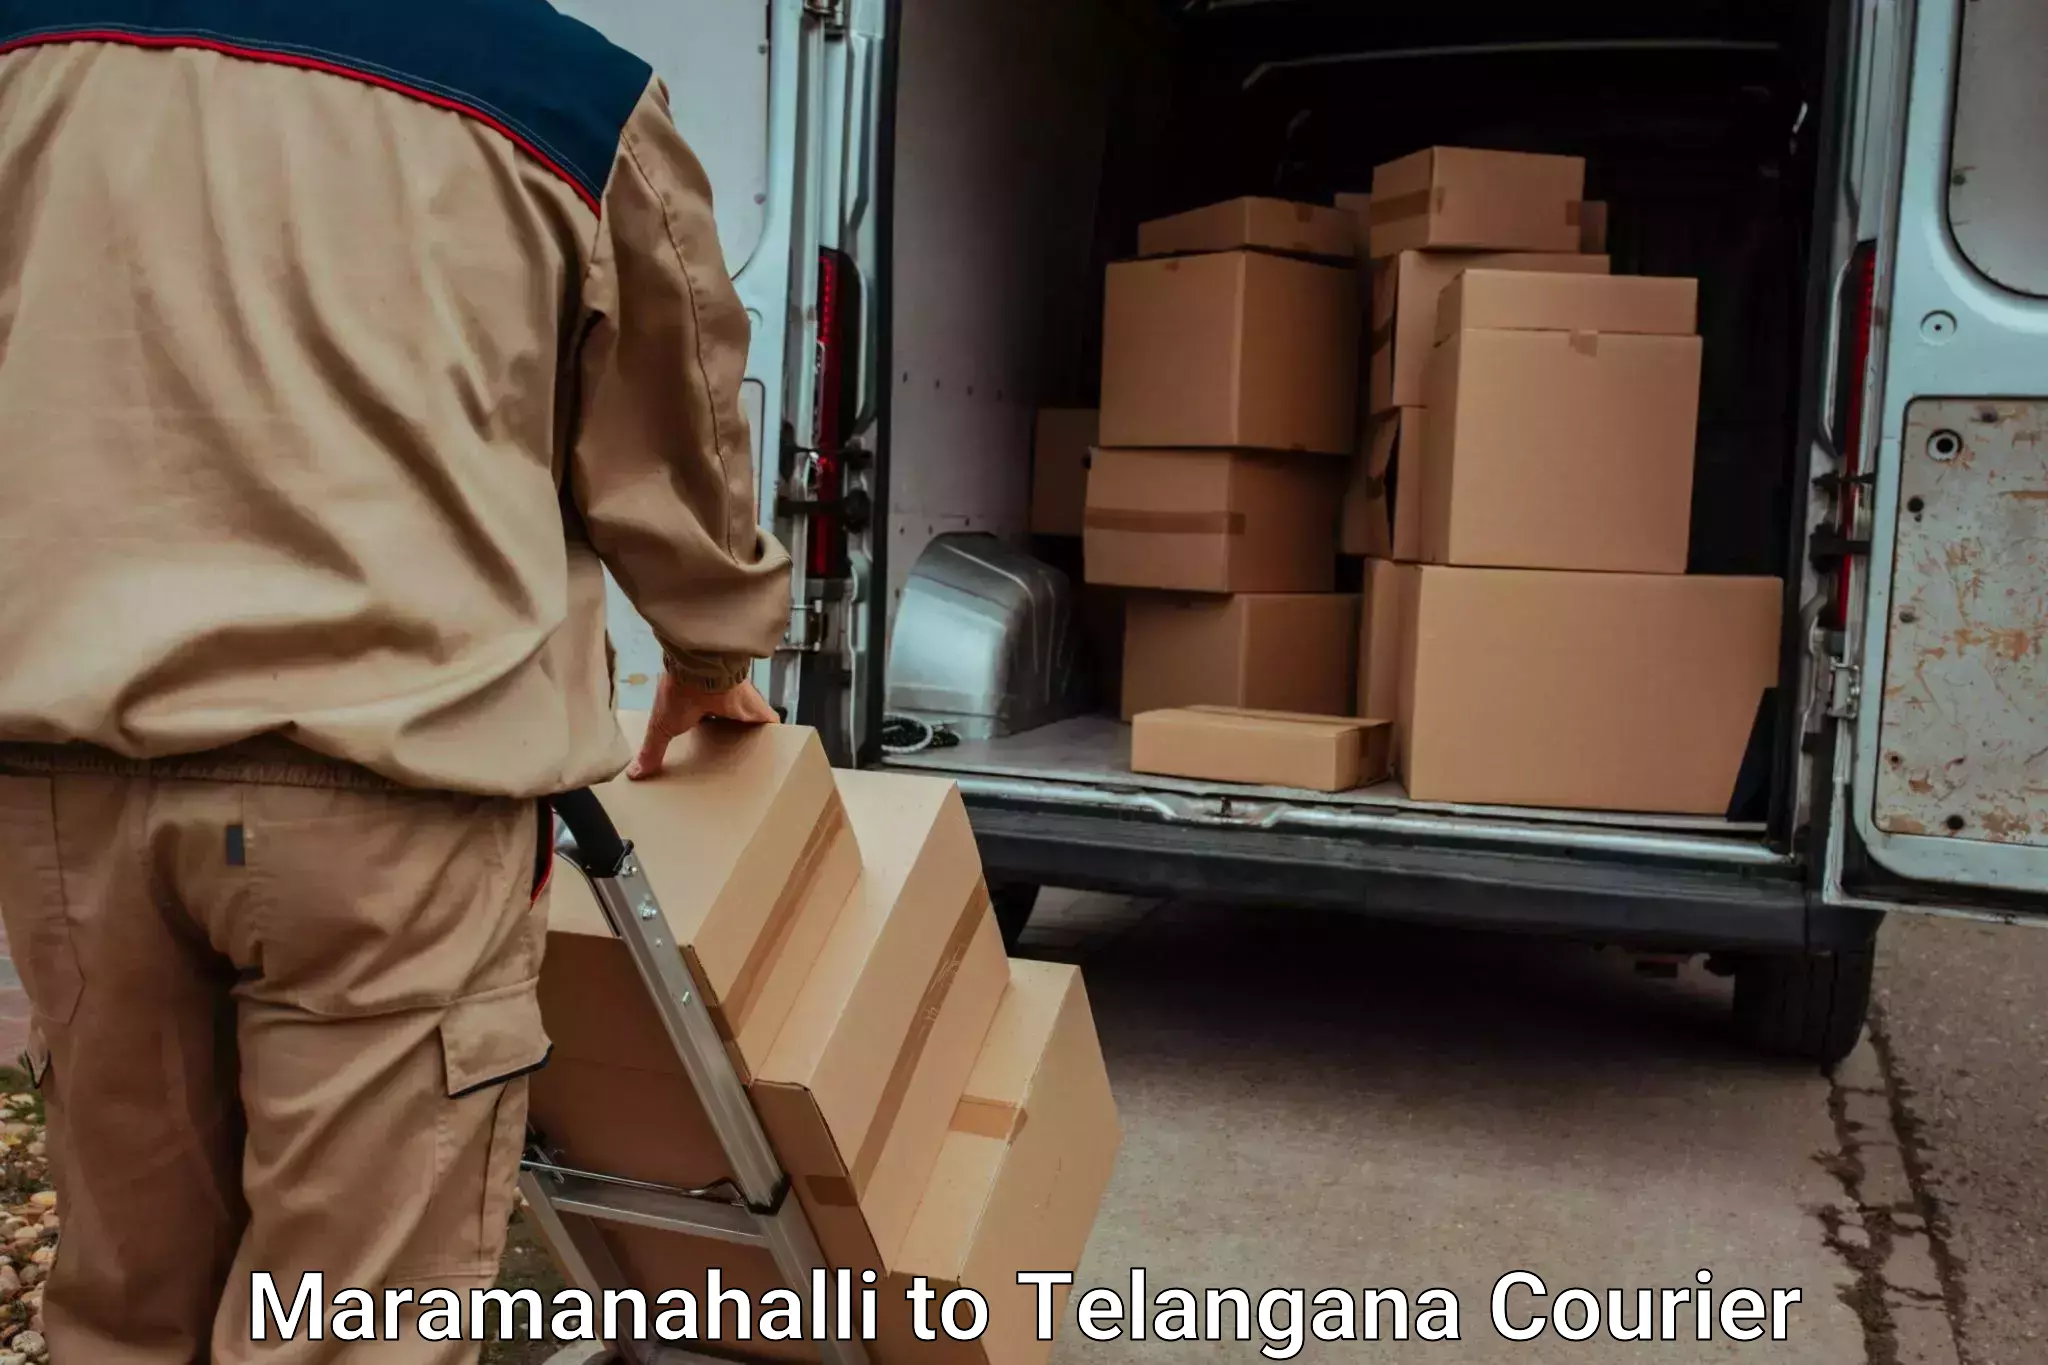 Door-to-door baggage service in Maramanahalli to Narmetta